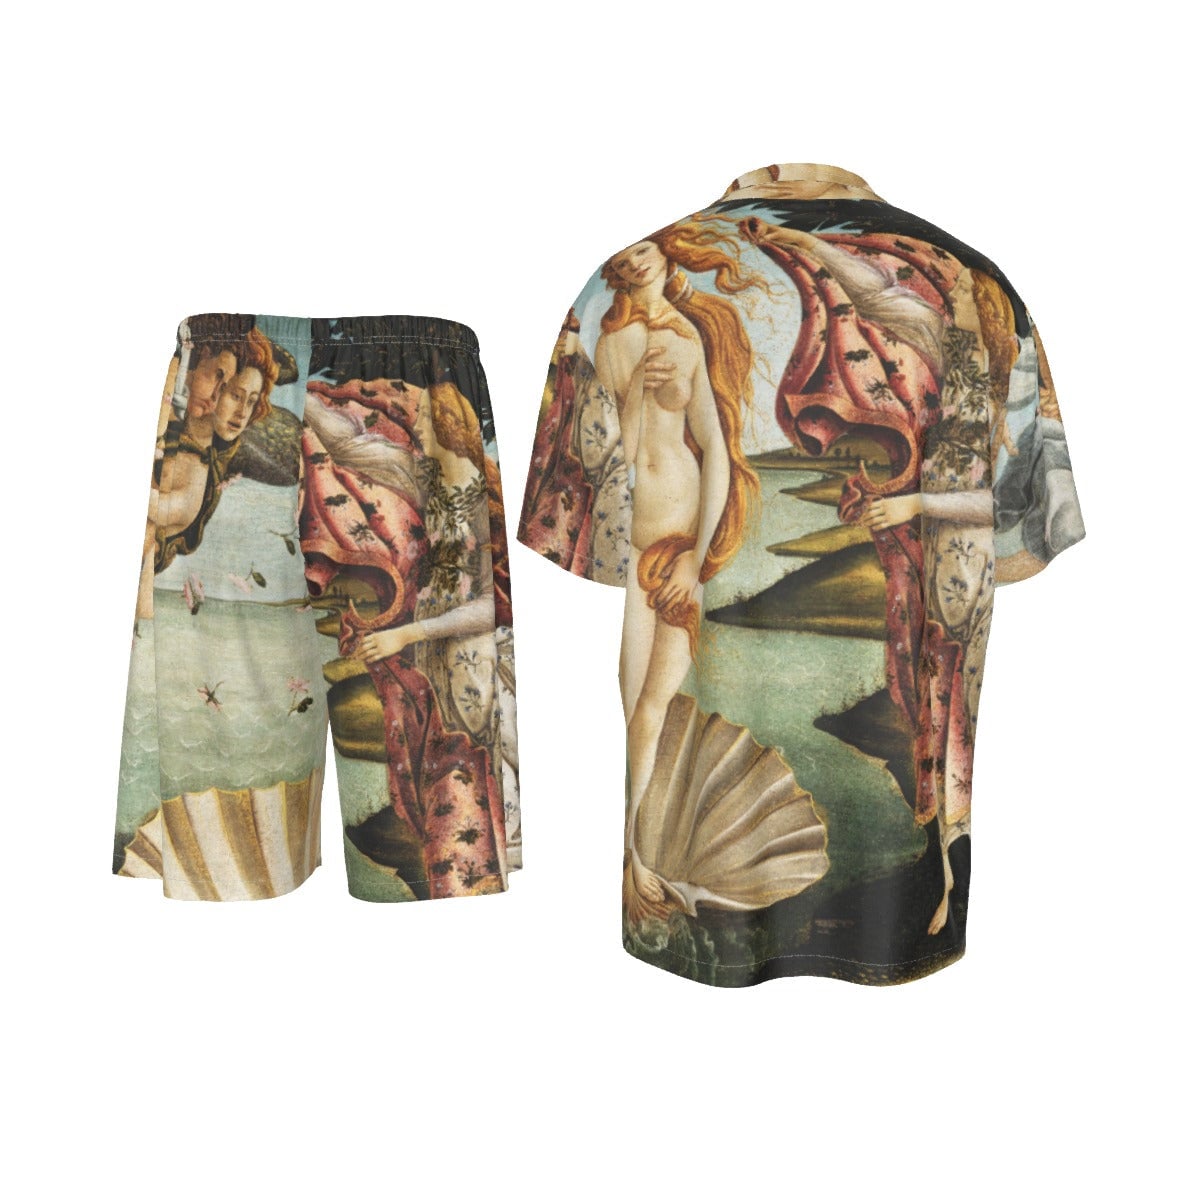 サンドロ・ボッティチェリのヴィーナスの誕生 絵画 シルク シャツ スーツ セット